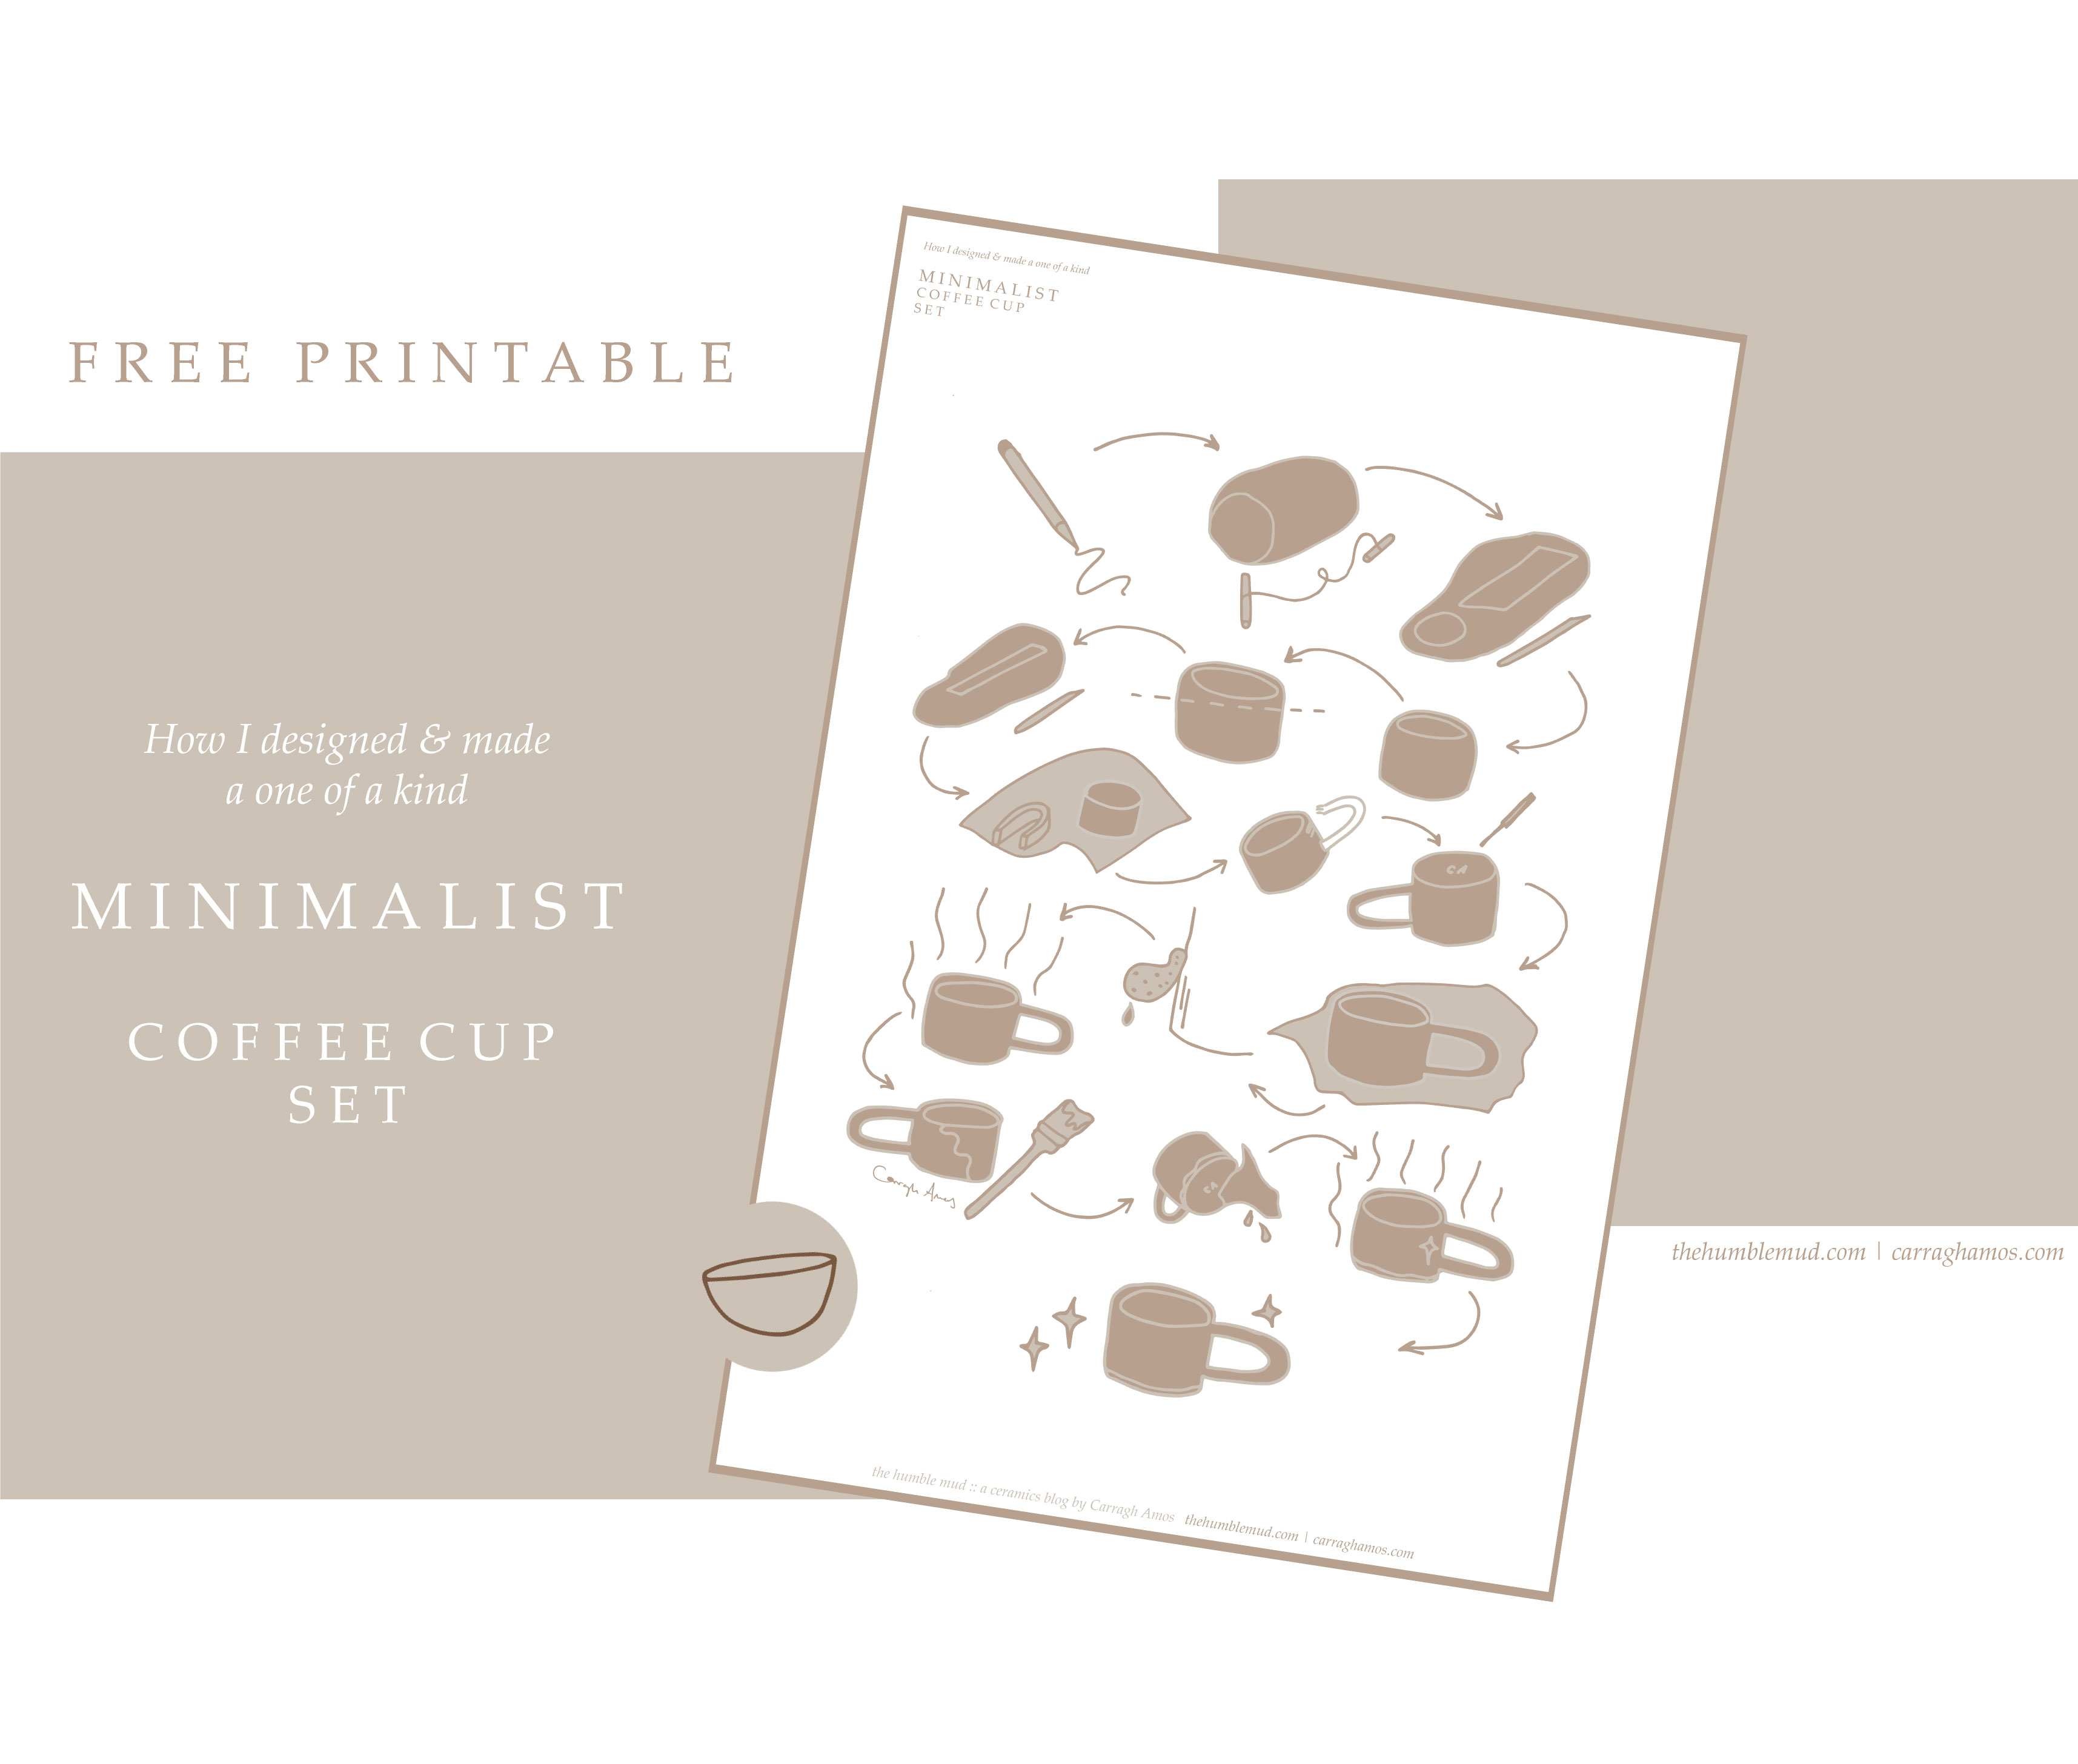  gratis utskrivbara: hur man gör en handgjord platta byggd mugg gratis utskrivbara. Illustrerad minimalistisk kaffekopp set instruktioner.